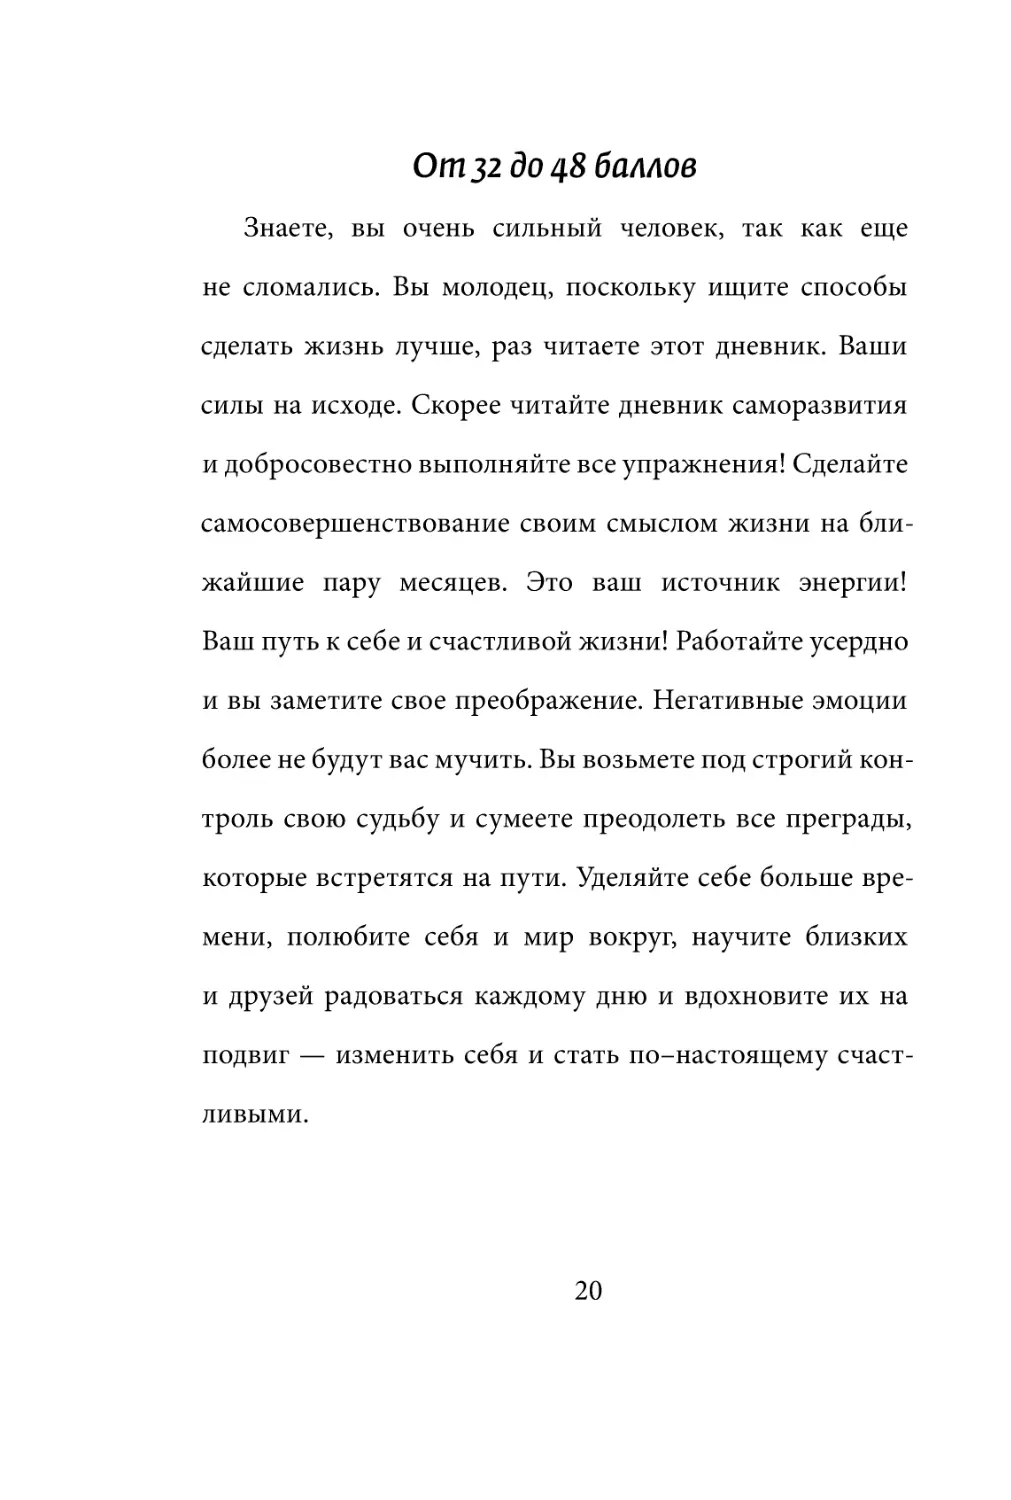 Sergey_Filippov_Dnevnik_samorazvitia_Evolyutsia_Vnutrennego_Sostoyania_20.pdf (p.20)